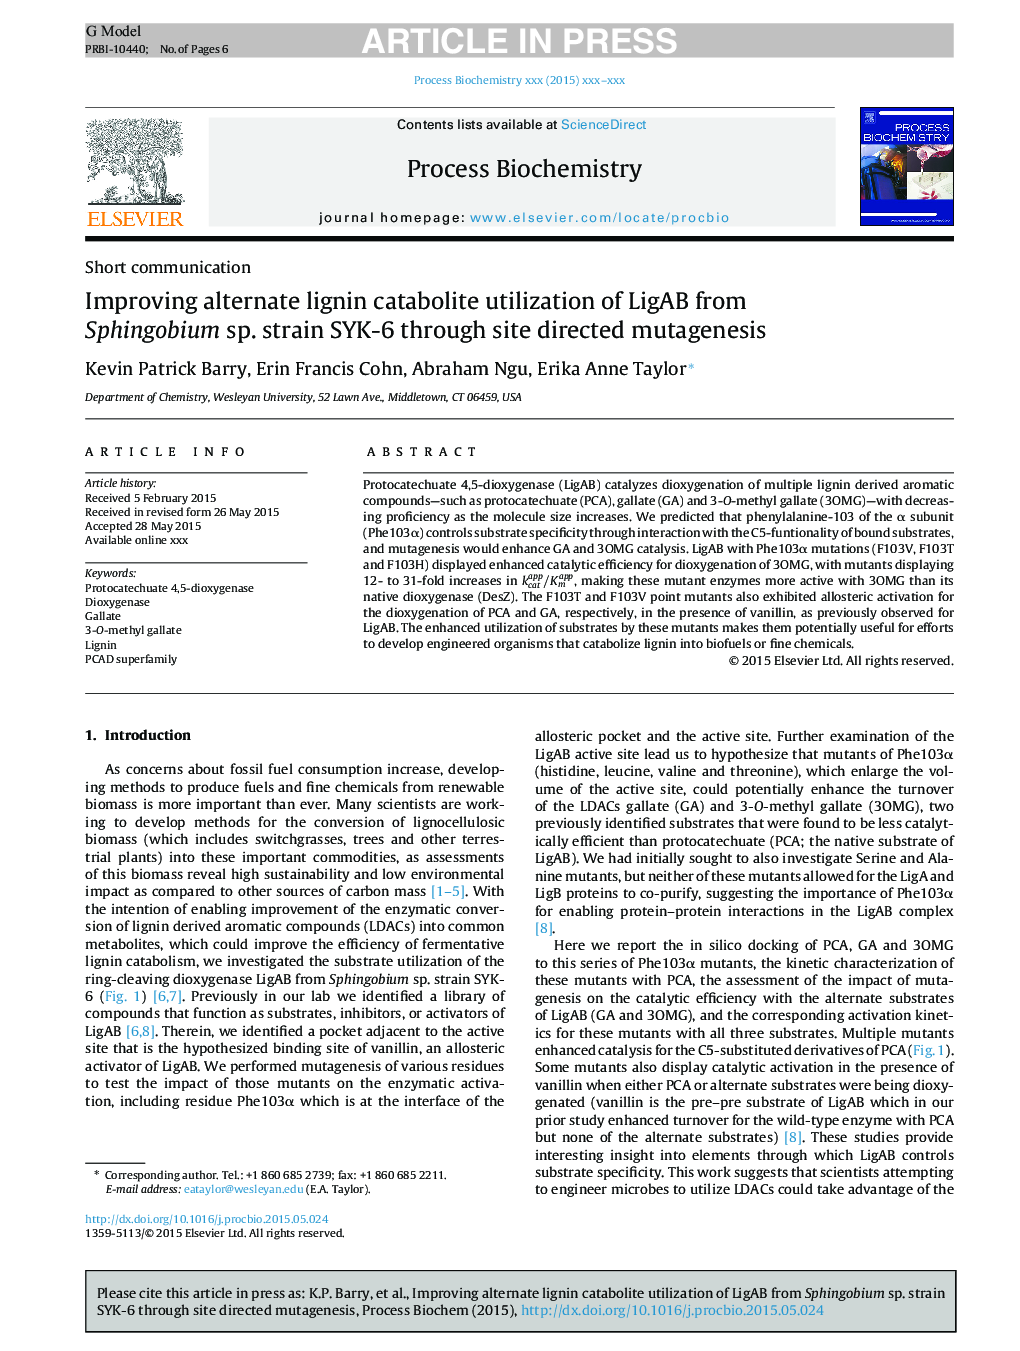 Improving alternate lignin catabolite utilization of LigAB from Sphingobium sp. strain SYK-6 through site directed mutagenesis